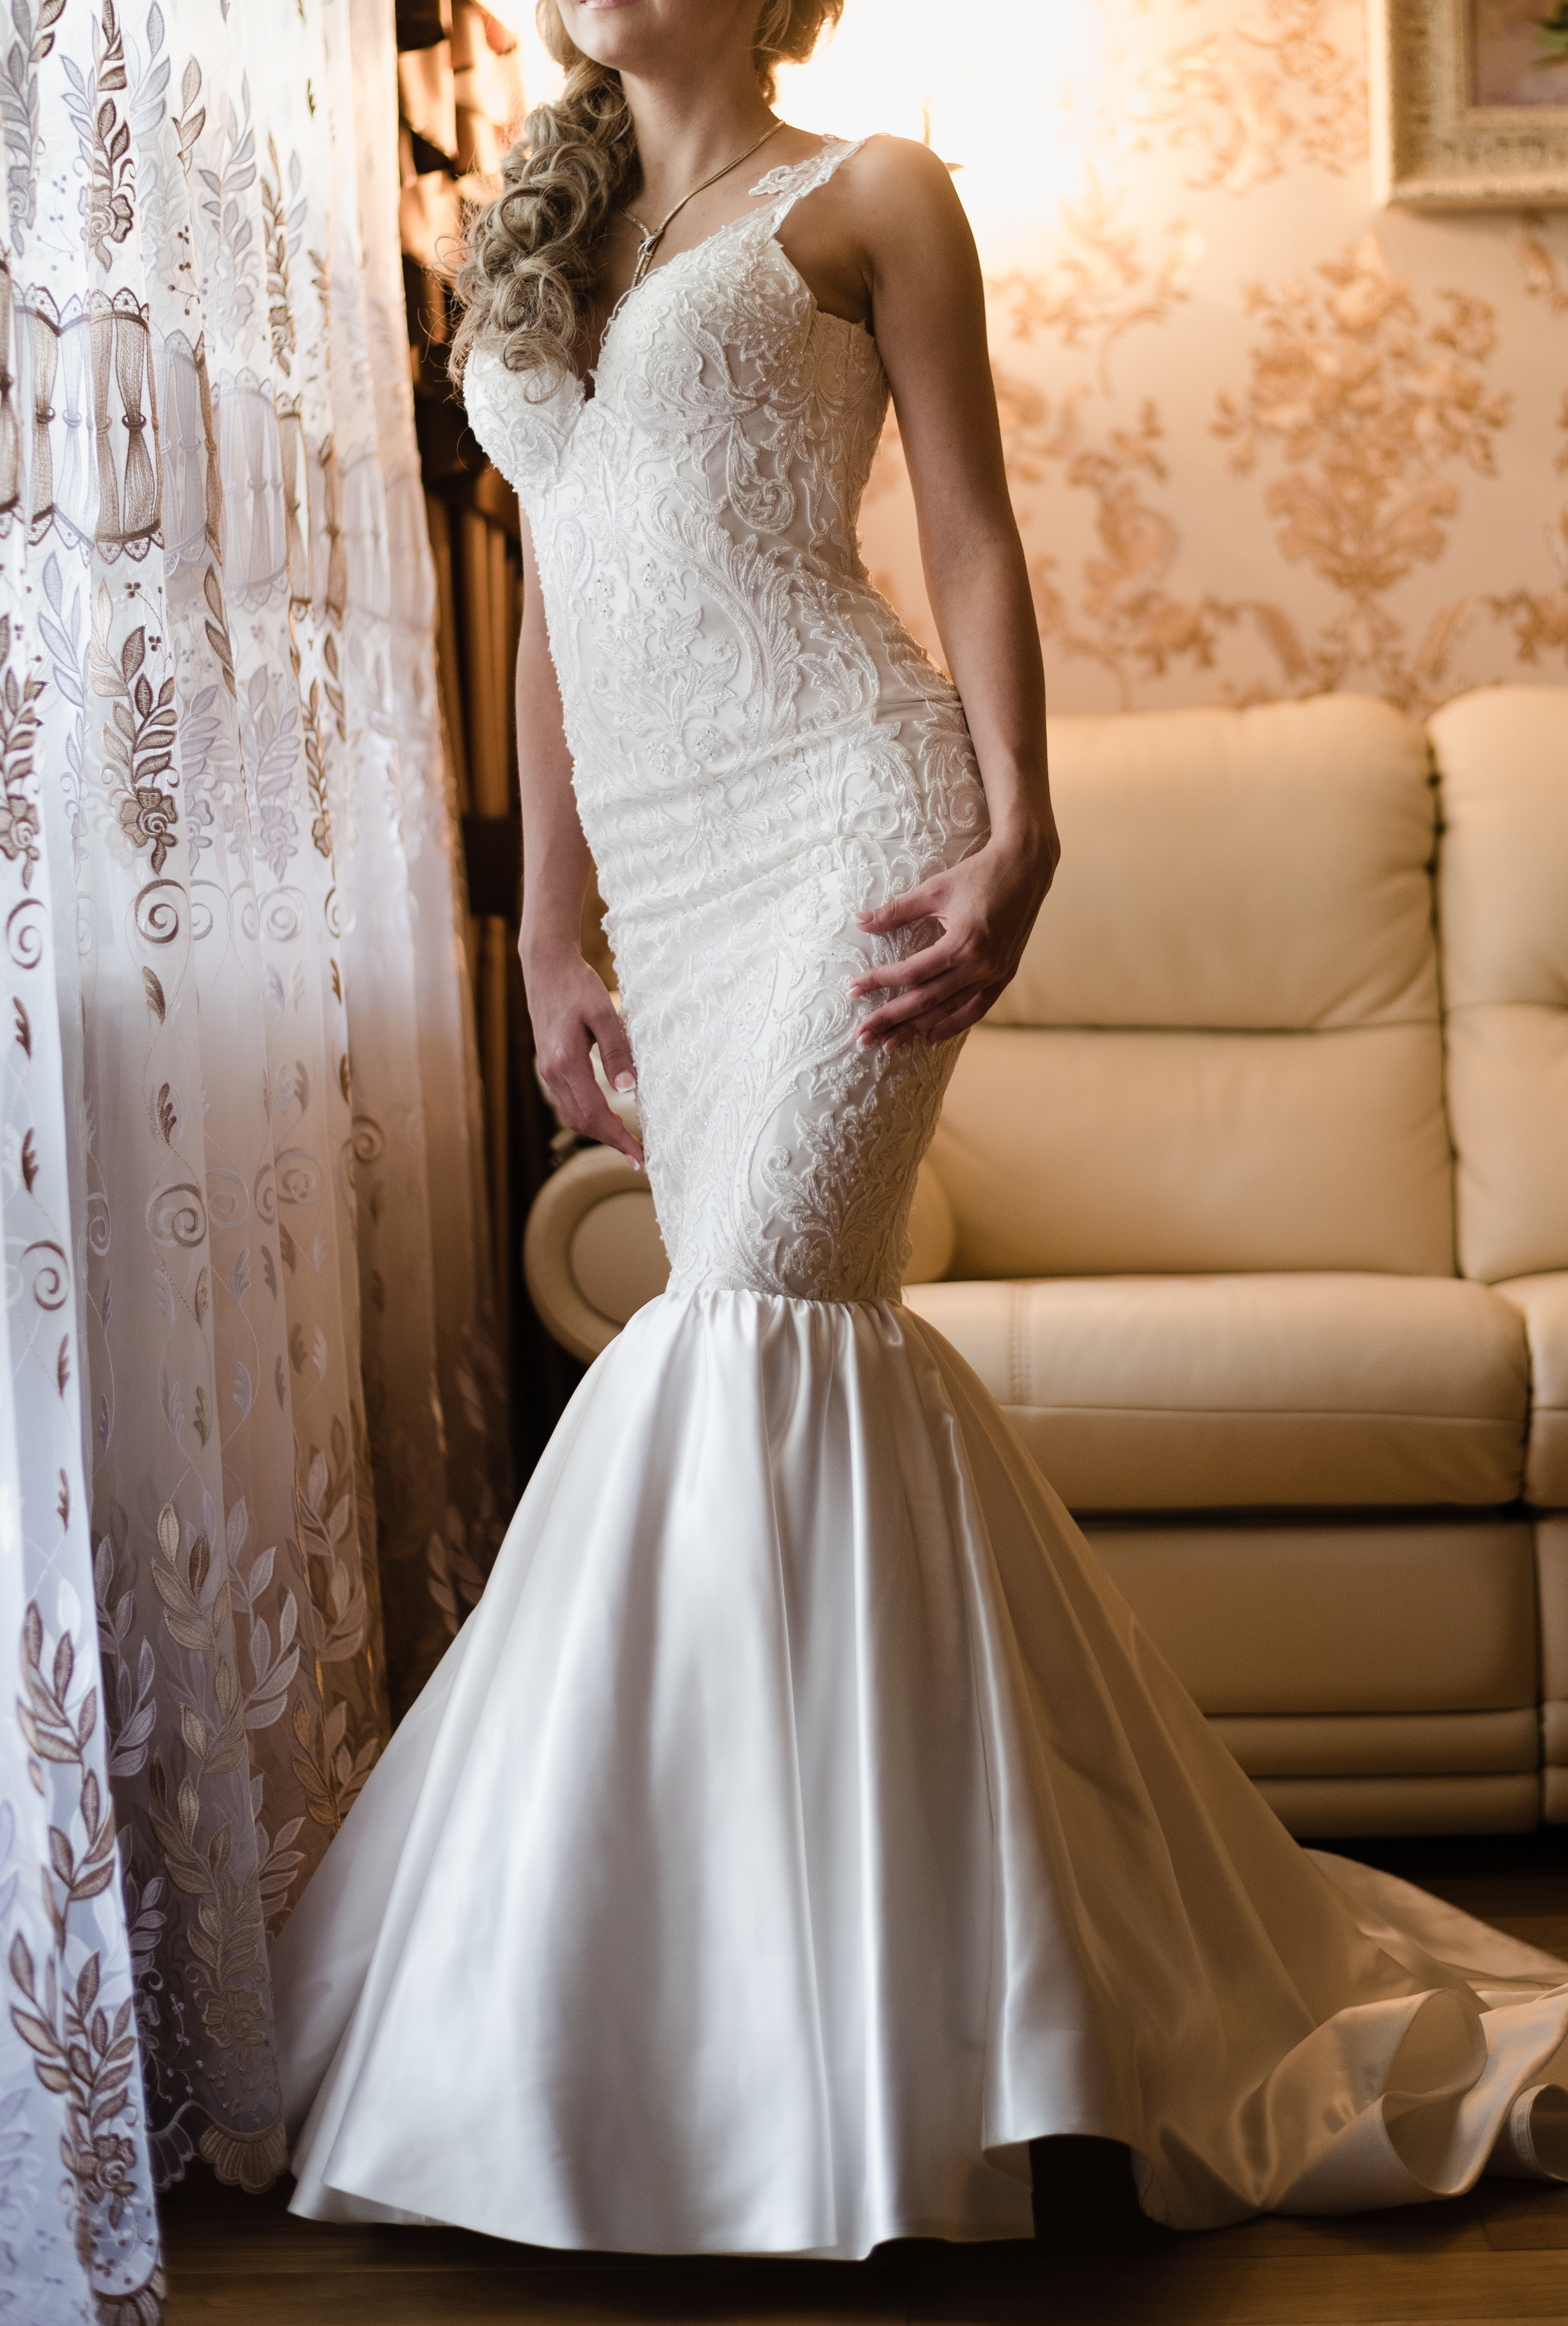 Eine Braut in einem Hochzeitskleid | Quelle: Shutterstock